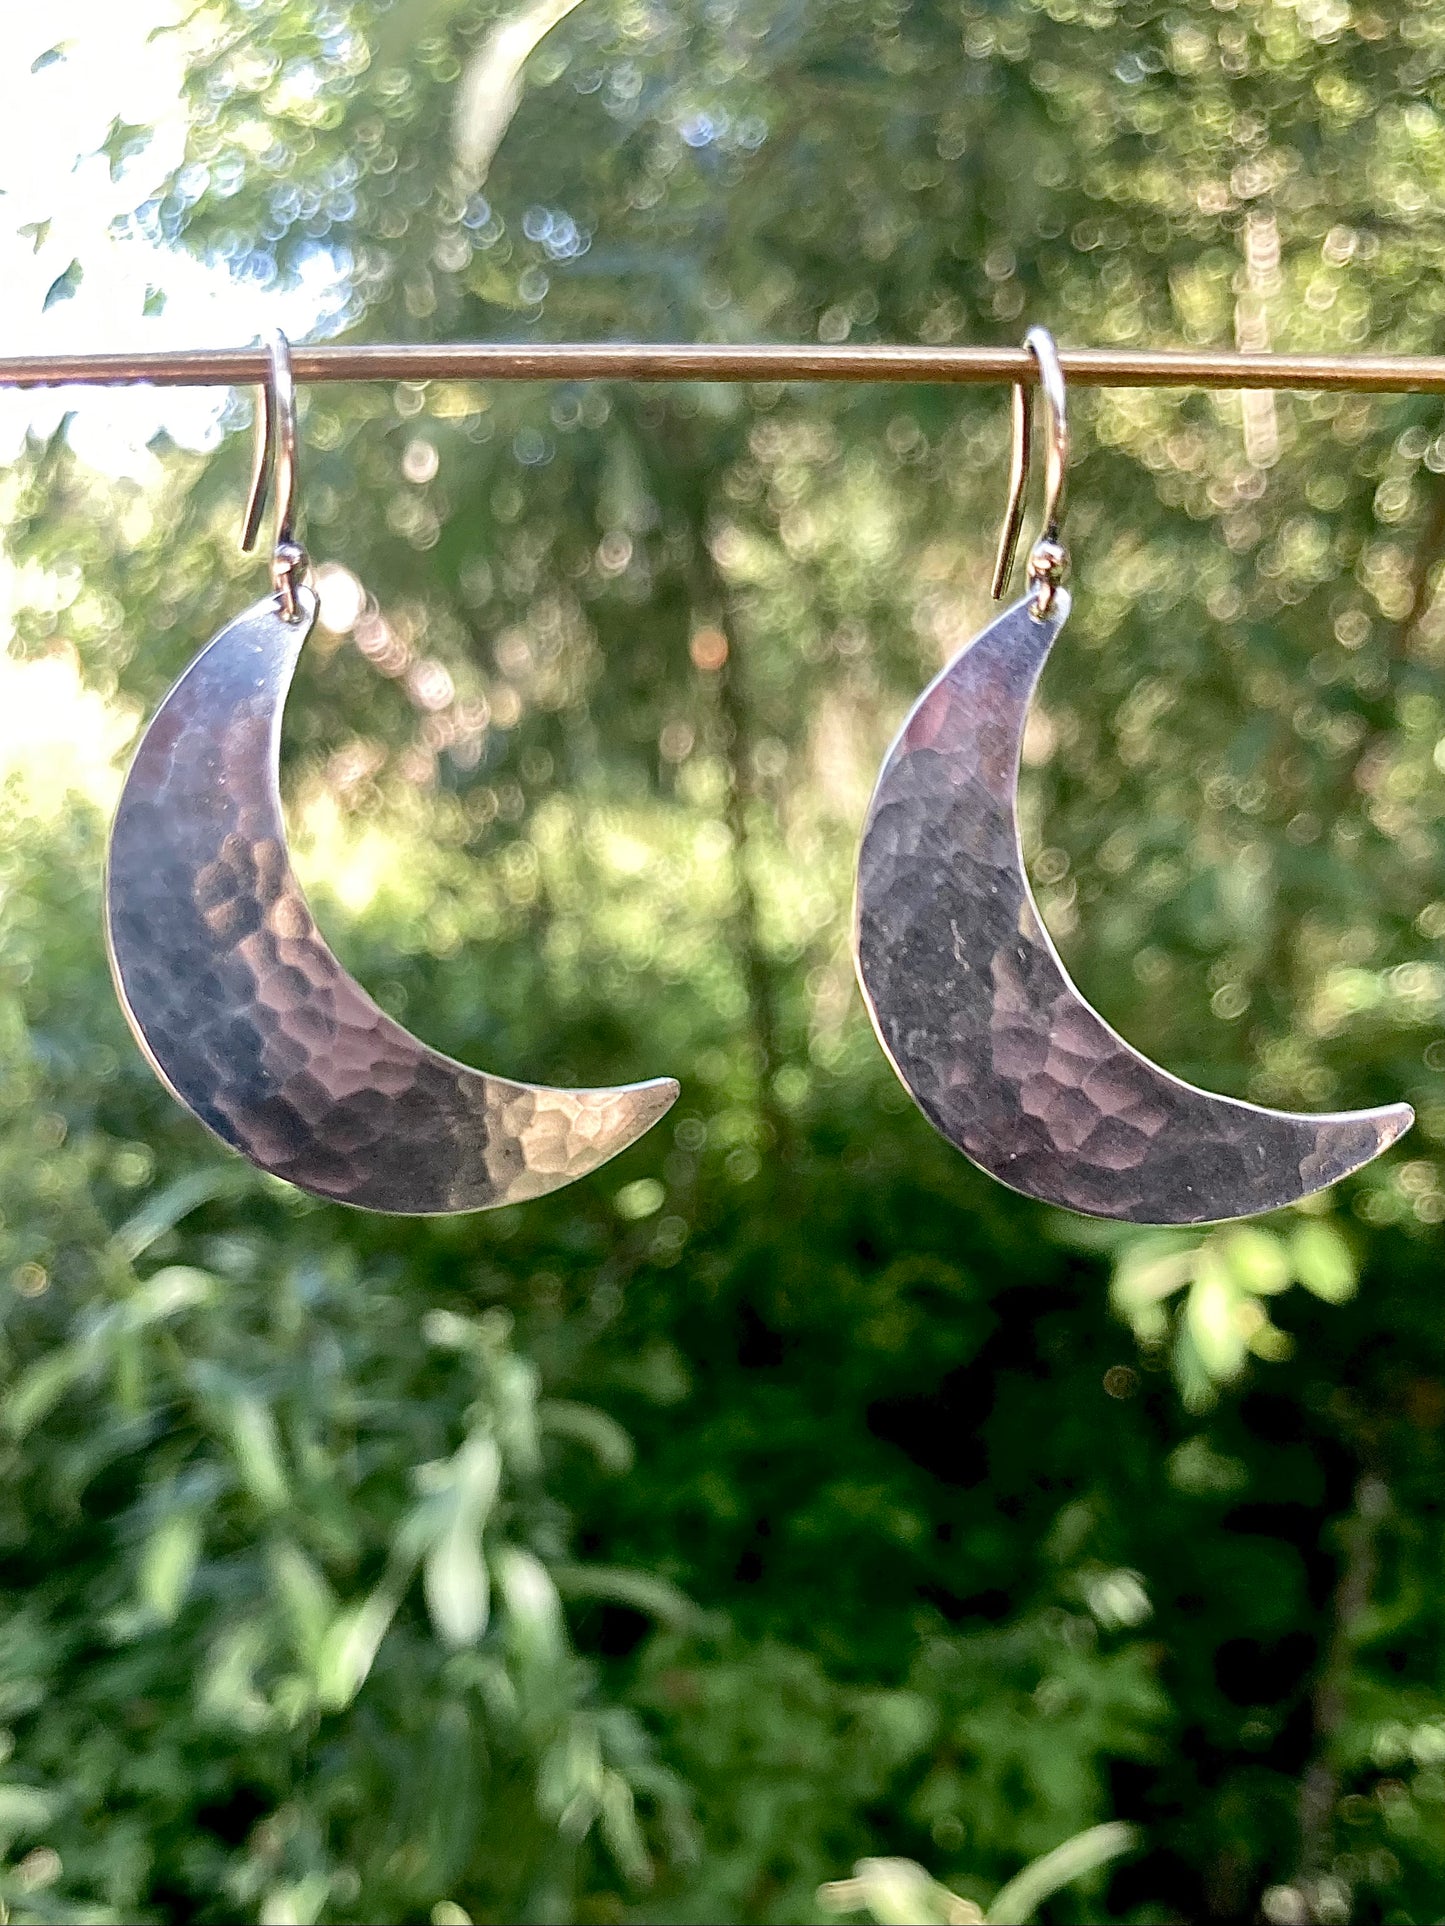 Crescent Moon Earrings in Sterling Silver | Moon Phase Earrings